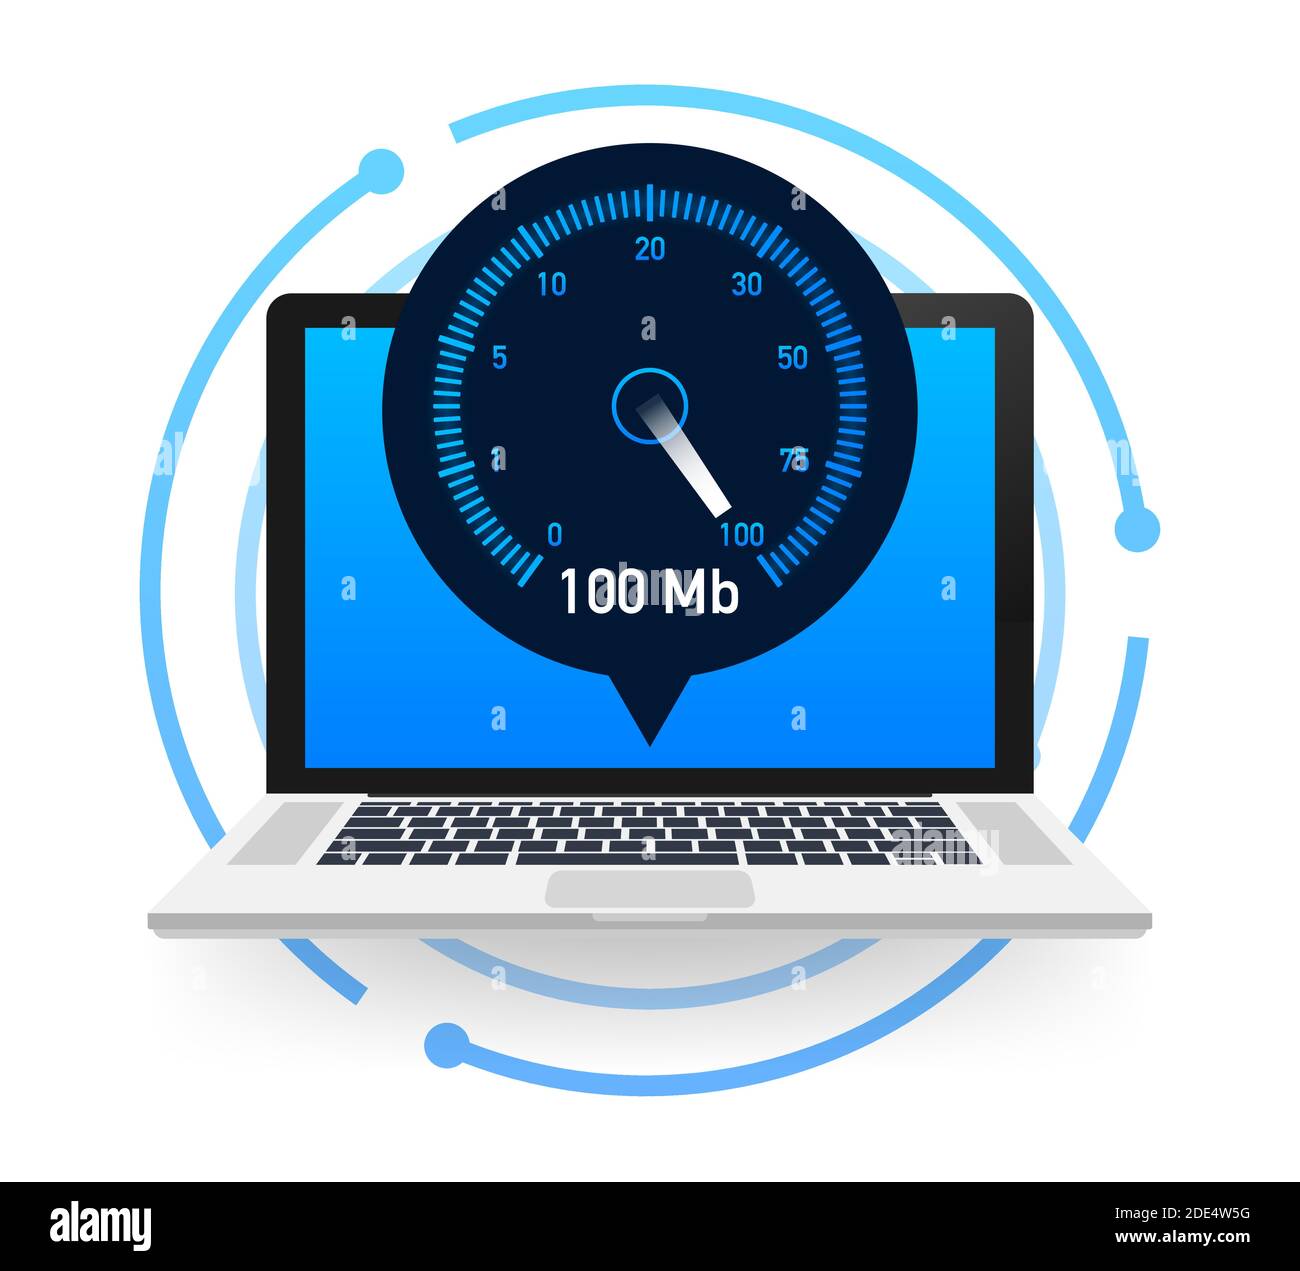 Geschwindigkeitstest auf dem Laptop. Geschwindigkeitsmesser Internet-Geschwindigkeit 100 mb. Website Geschwindigkeit Ladezeit. Vektorgrafik. Stock Vektor